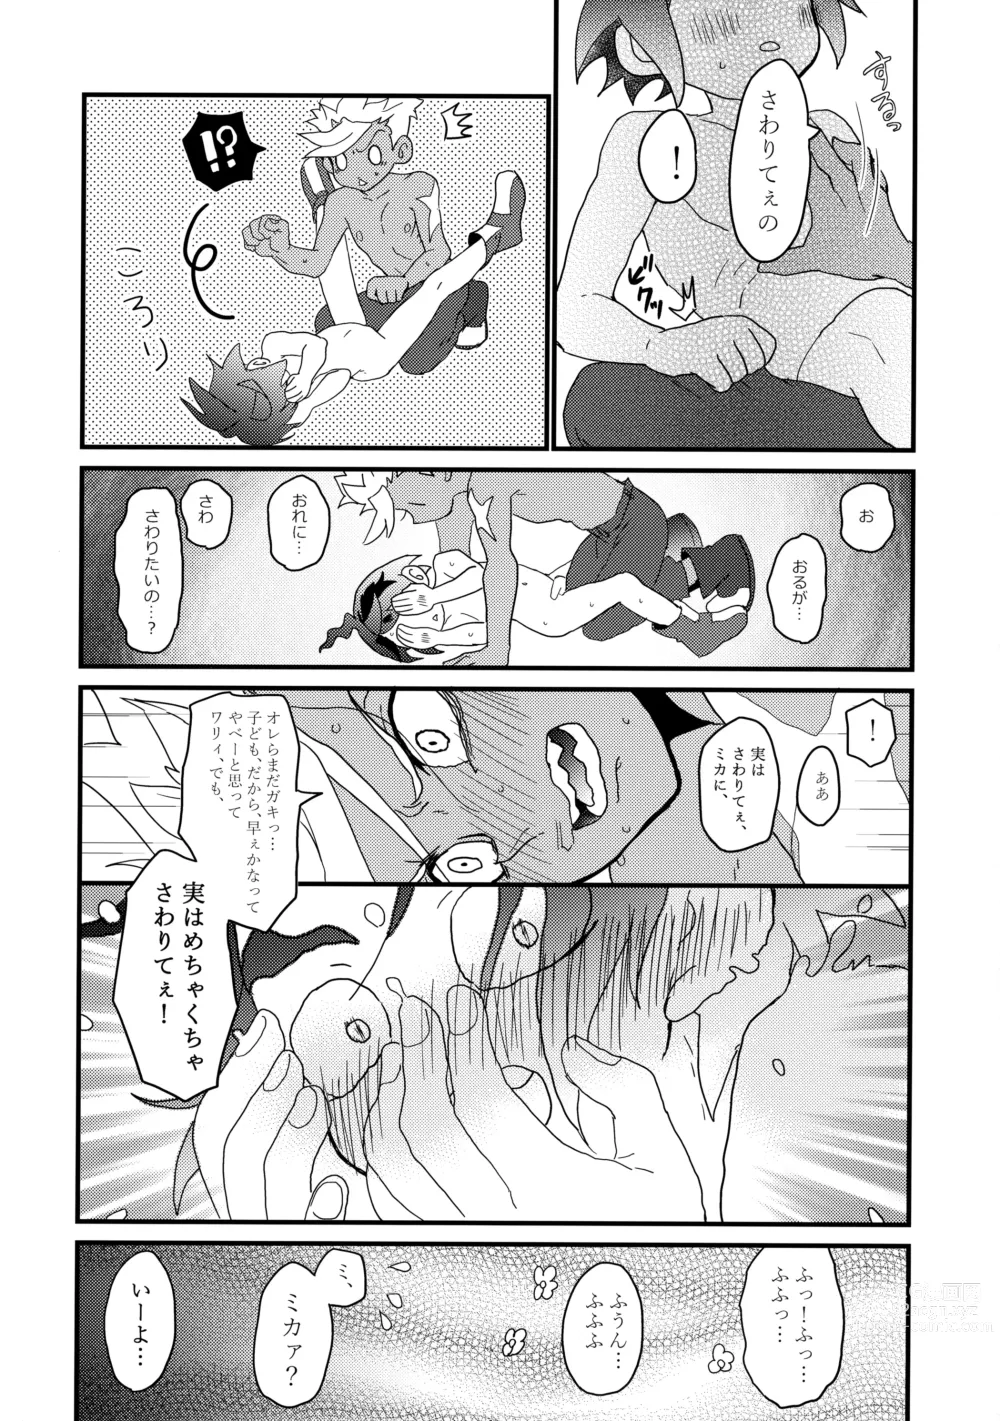 Page 17 of doujinshi Aka Oni to Ao Oni no Tango